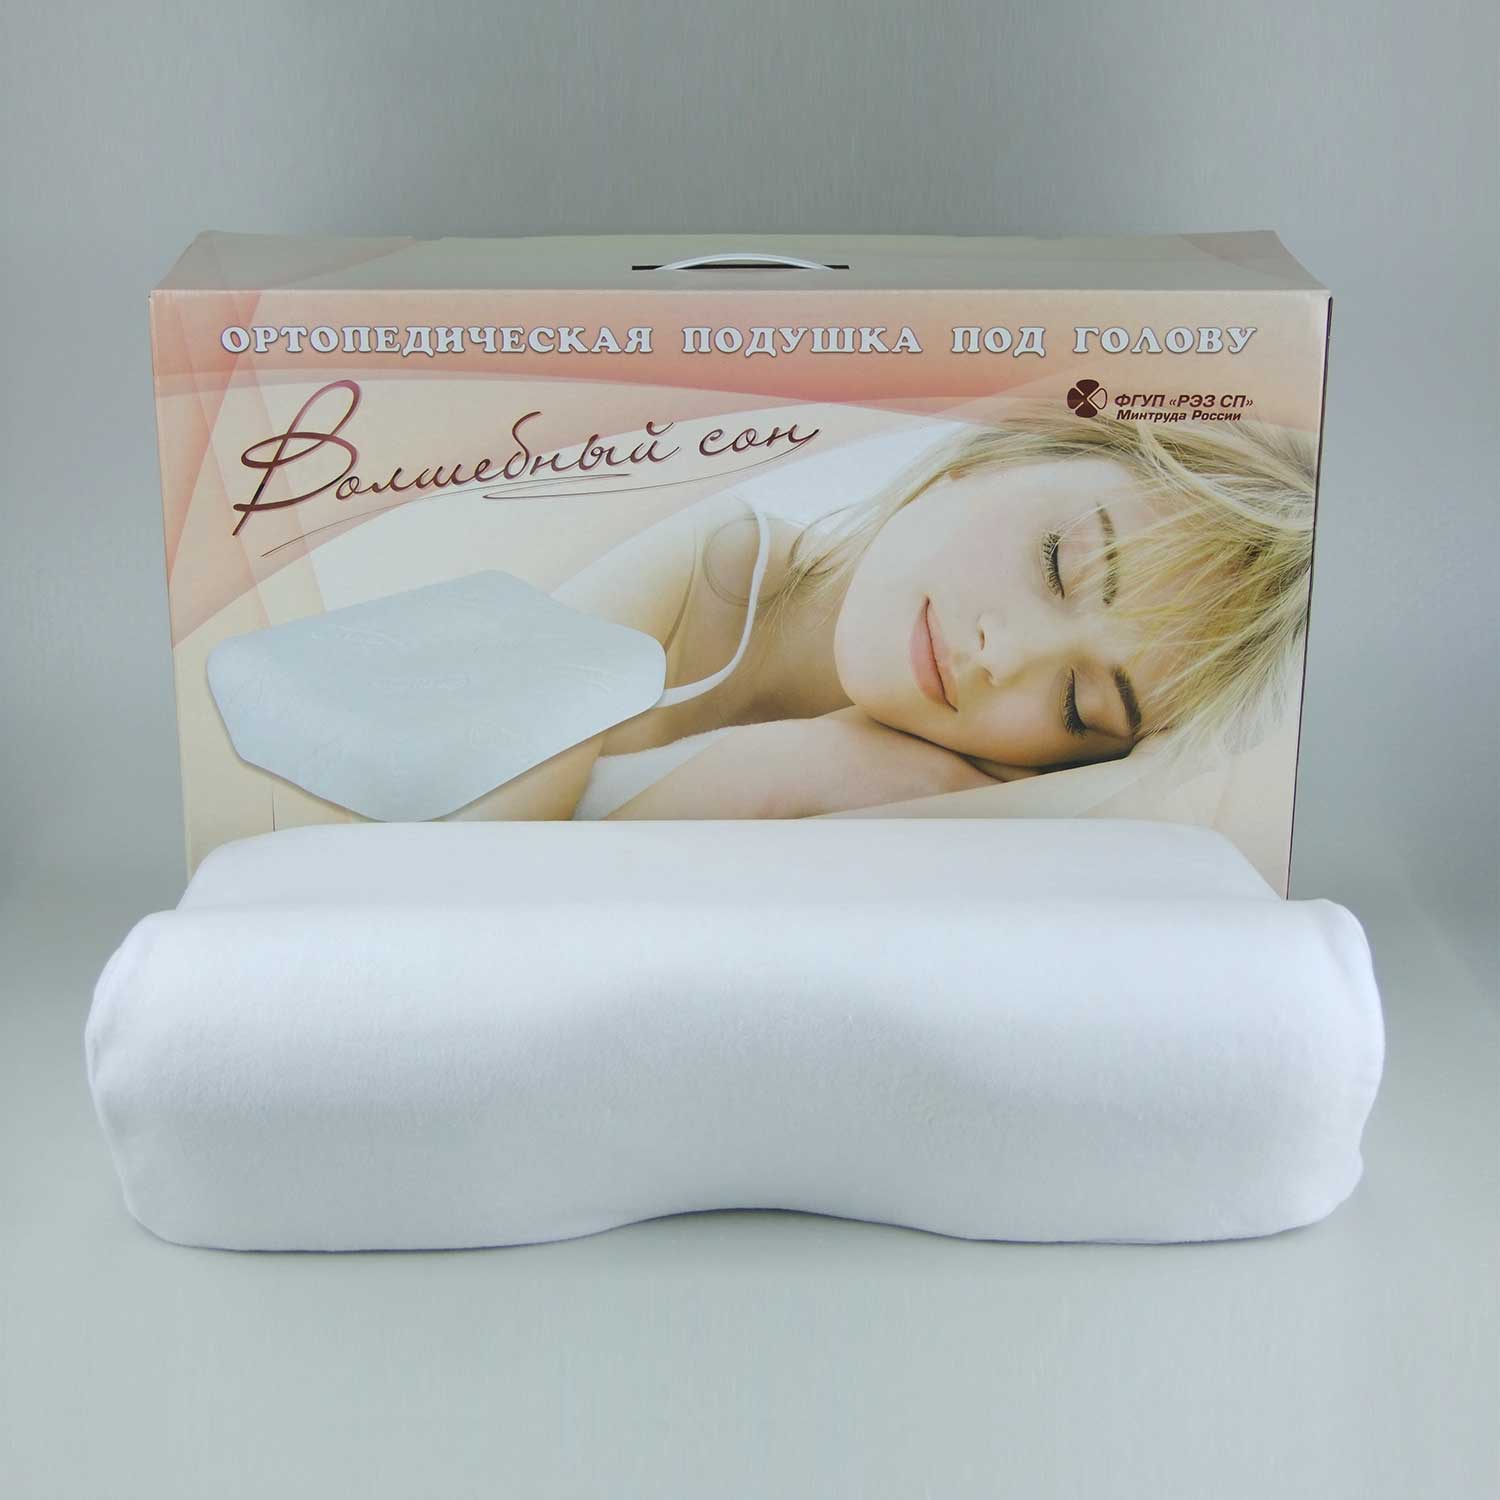 Купить ортопедическую подушку для сна на озон